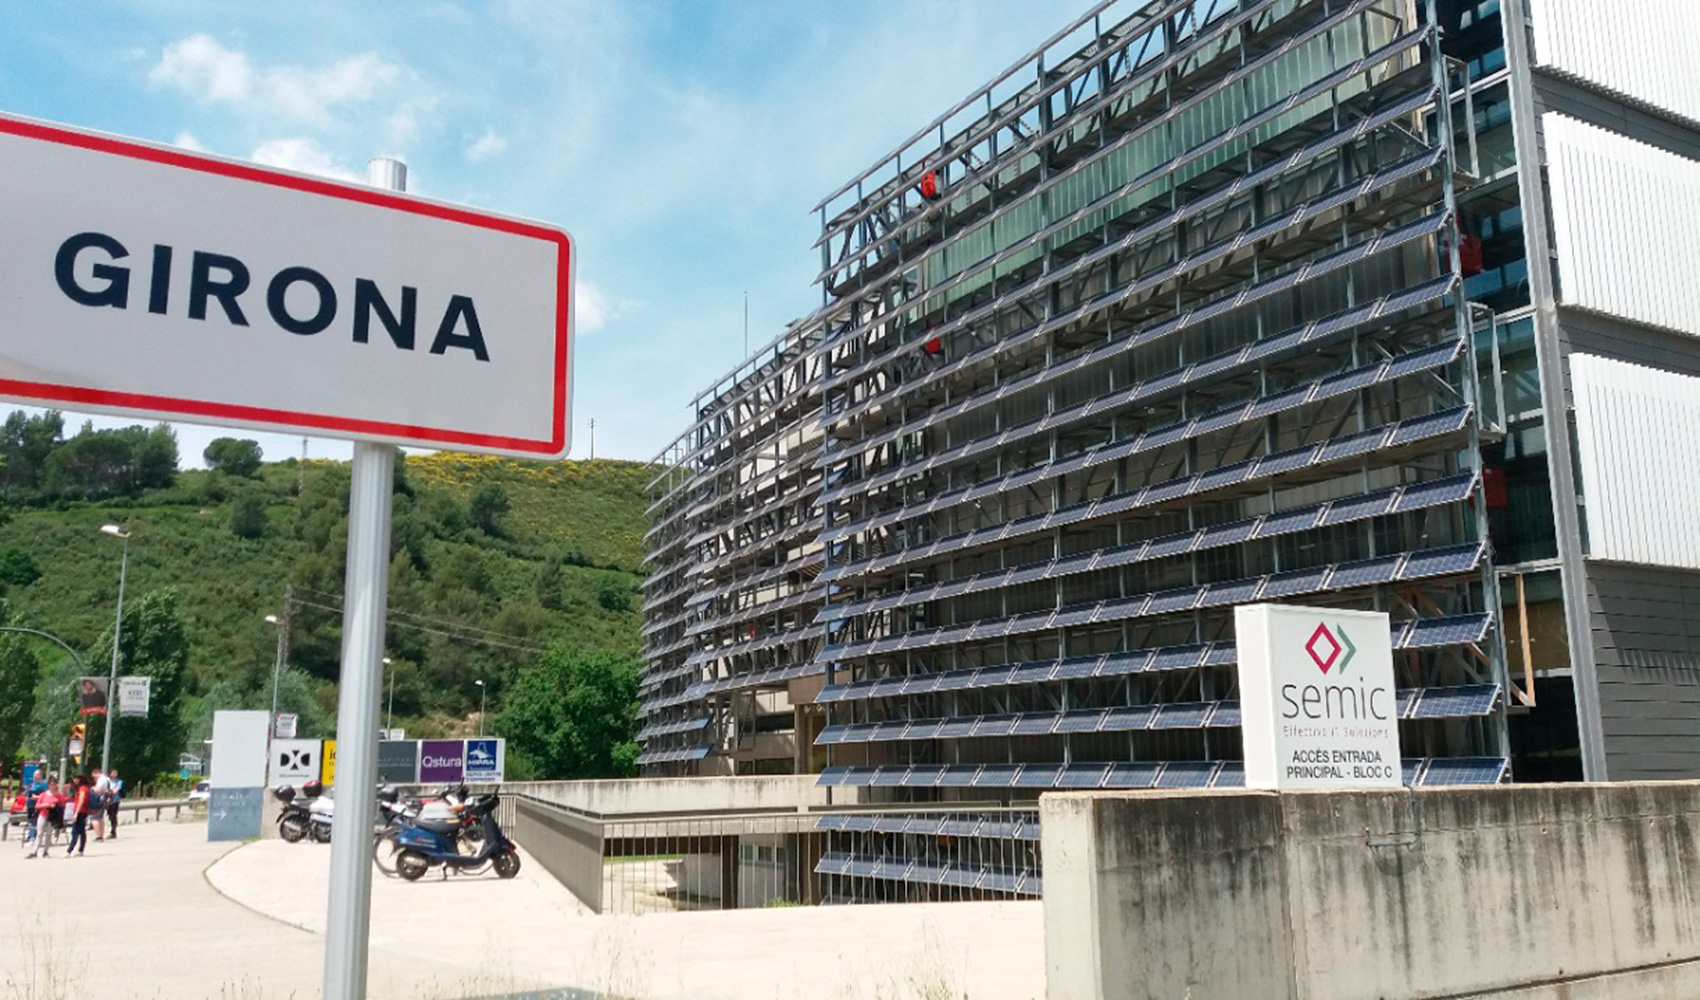 La nueva oficina de SEMIC supone la primera sede de una gran empresa del sector IT en Girona